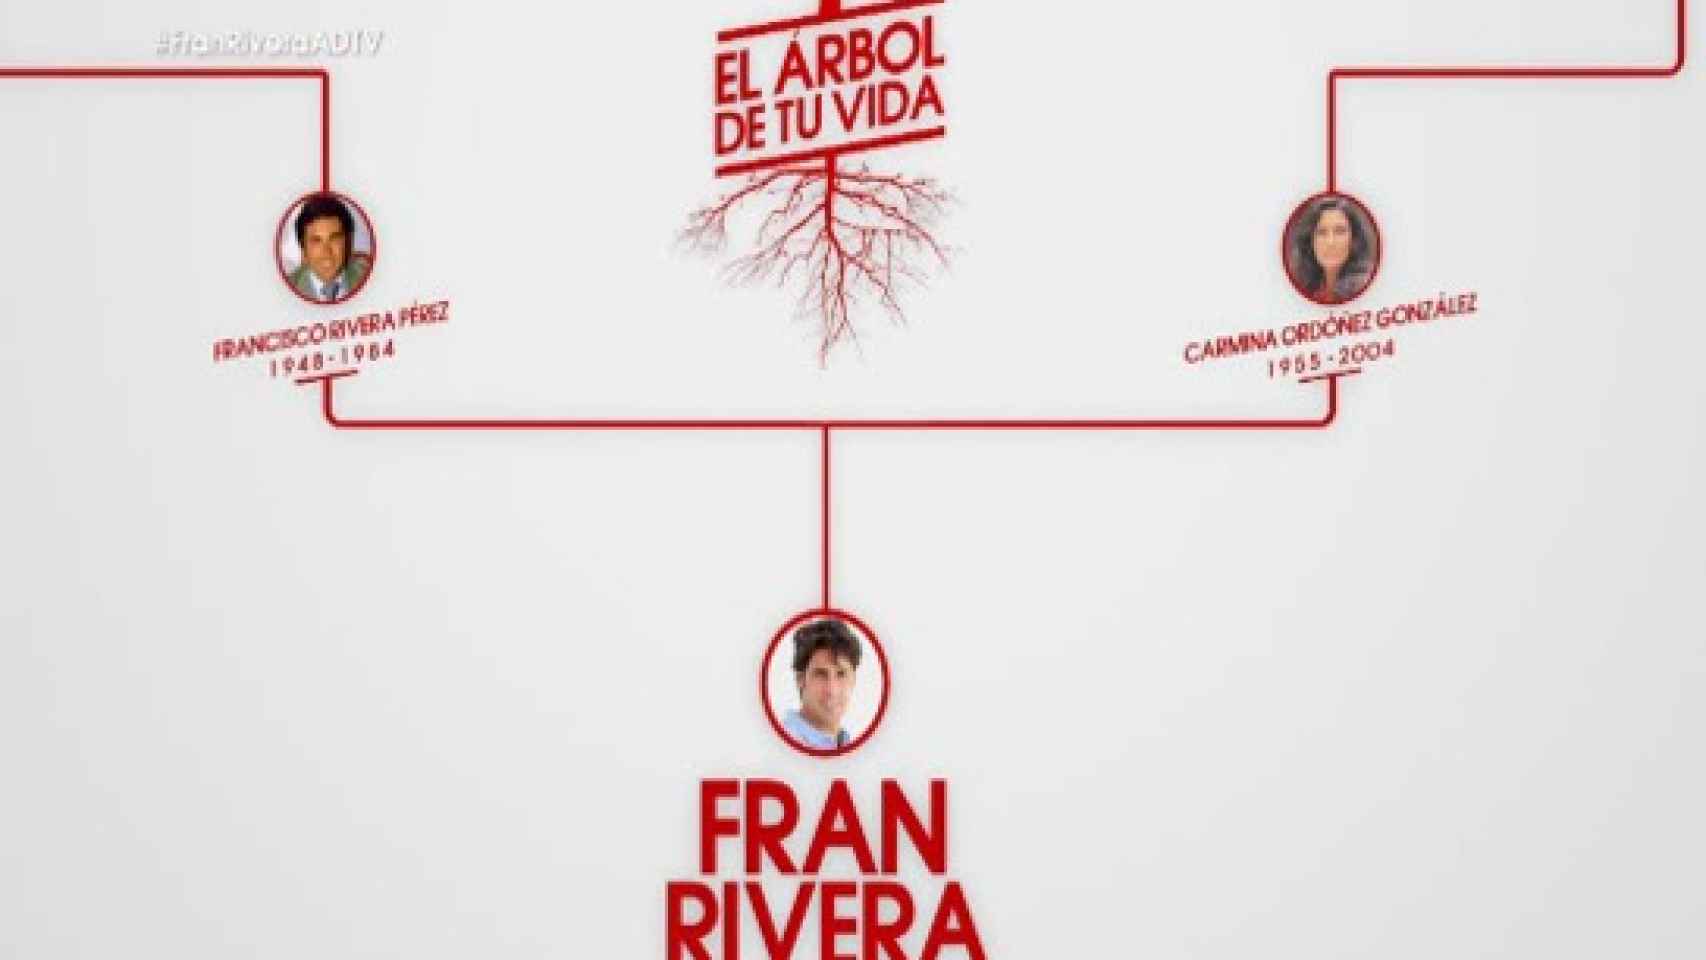 El árbol genealógico de Fran Rivera.